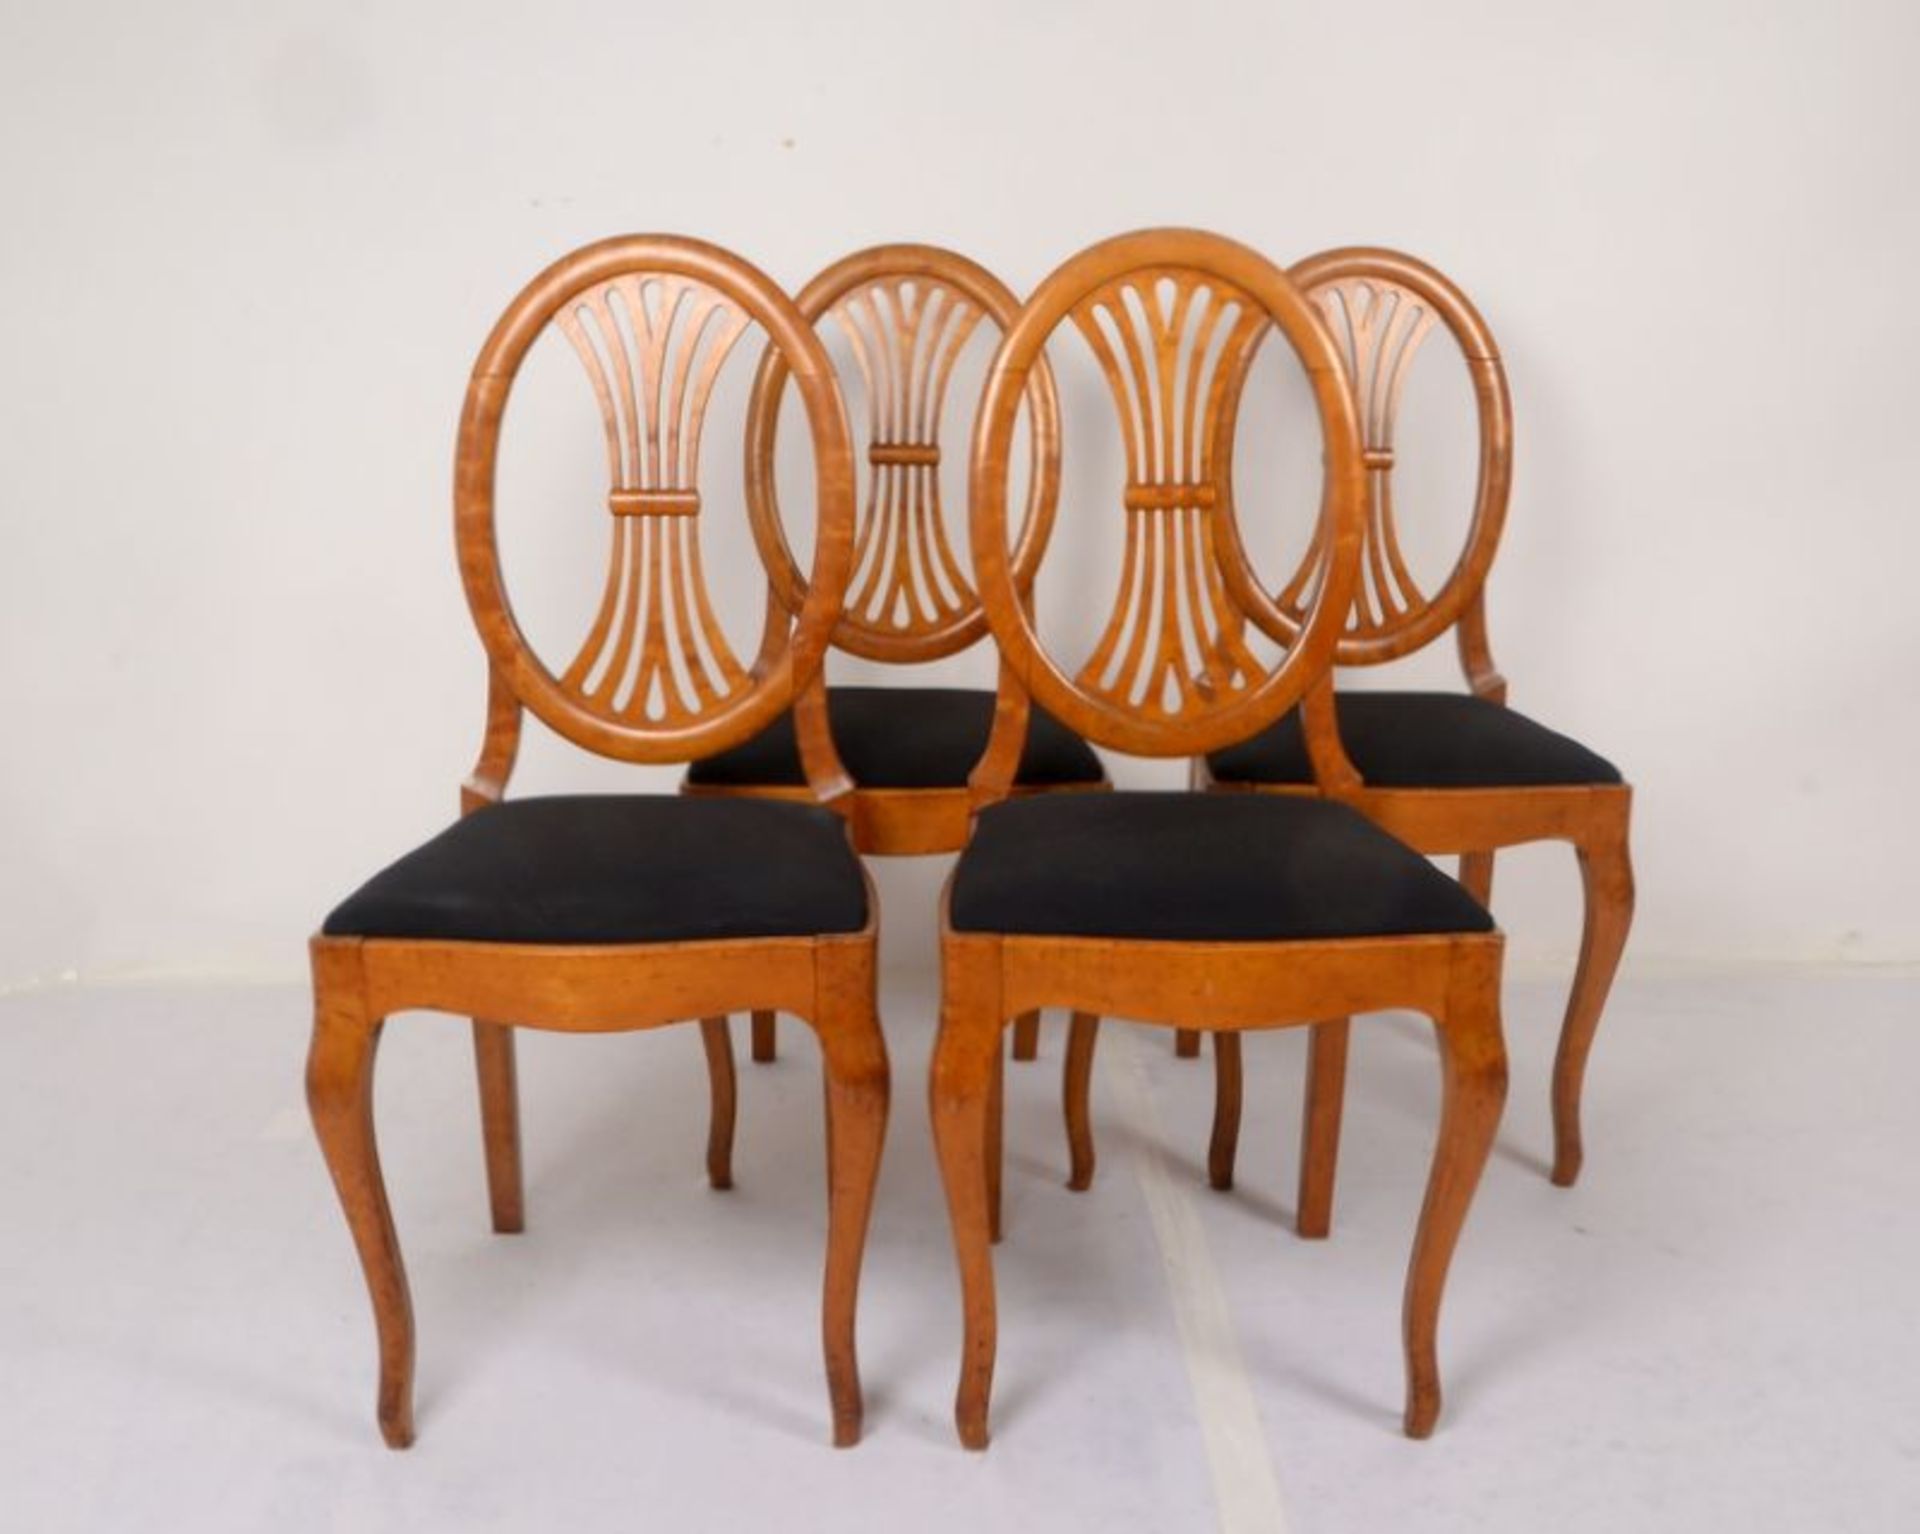 Satz Stühle (Biedermeider), Birke, ovale Rückenlehne mit geschwungener Verstrebung, schwarzes - Bild 2 aus 3